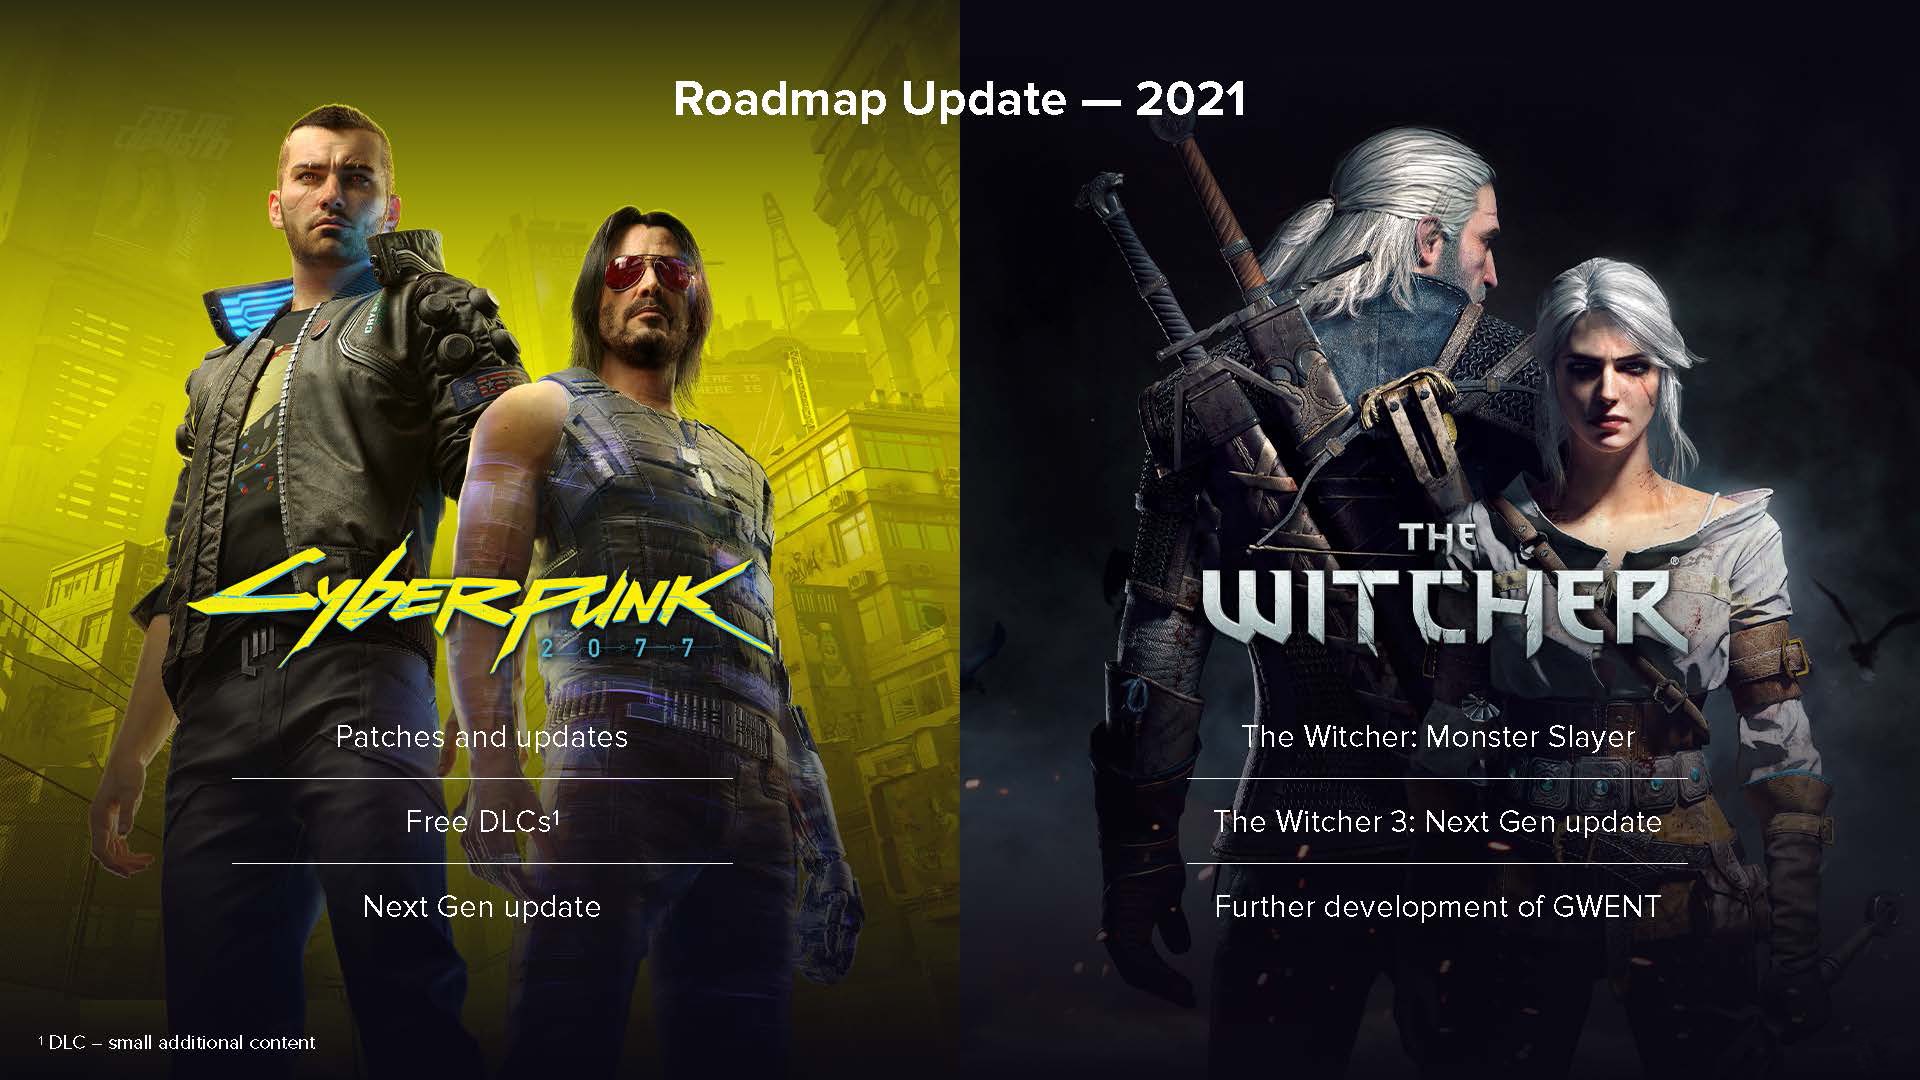 CDPR; Cyberpunk 2077, Witcher 3 ve diğer oyunları ile ilgili gelecekteki planlarını açıkladı